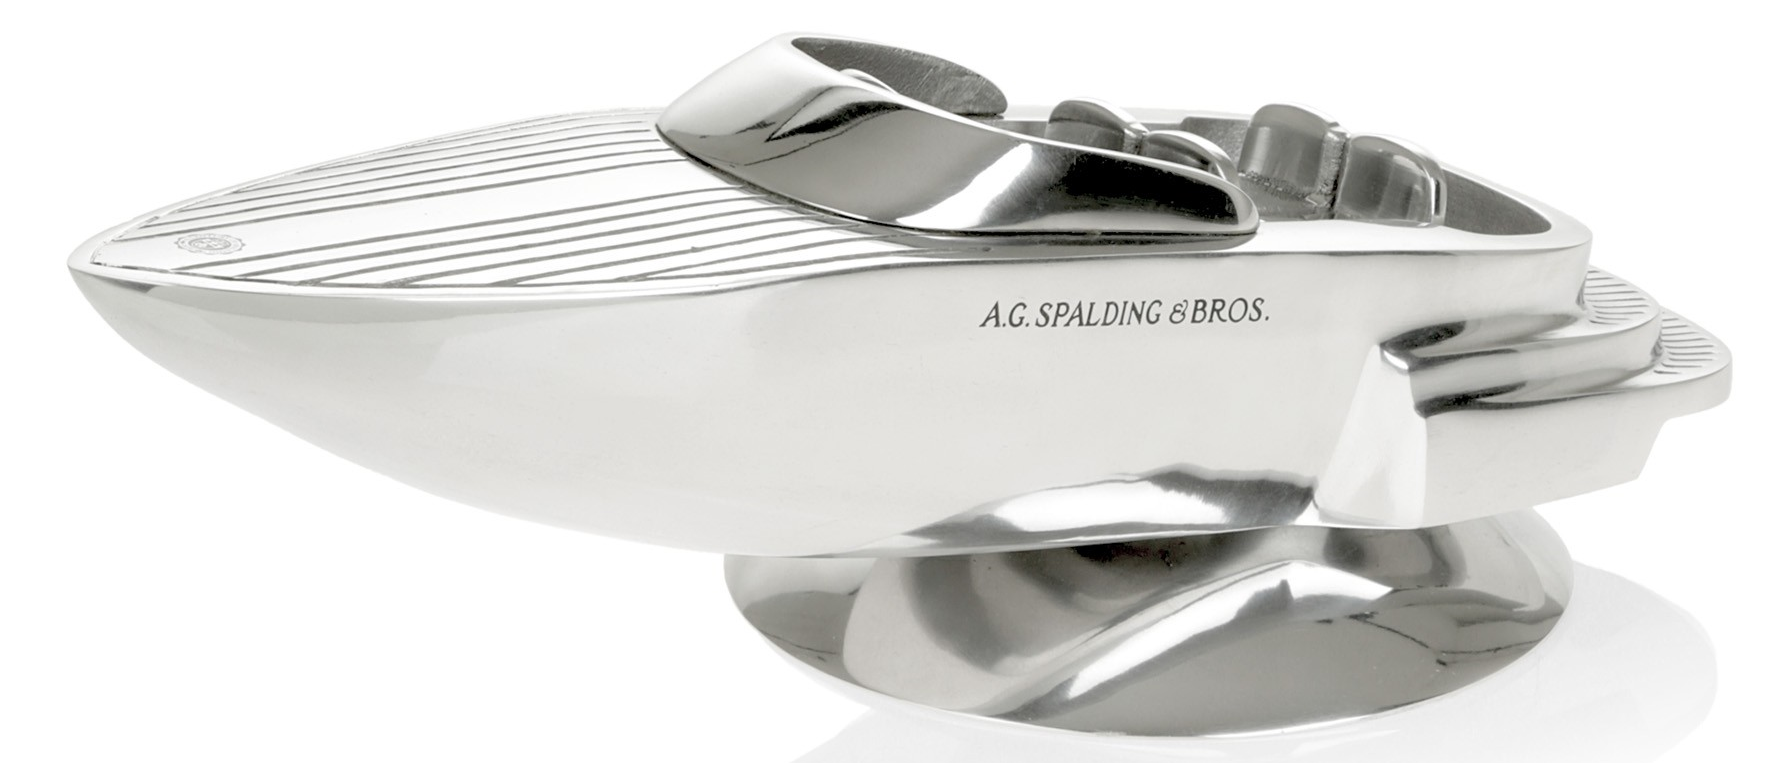 A.G. SPALDING & BROS Motoscafo alluminio - Cartoleria Perna